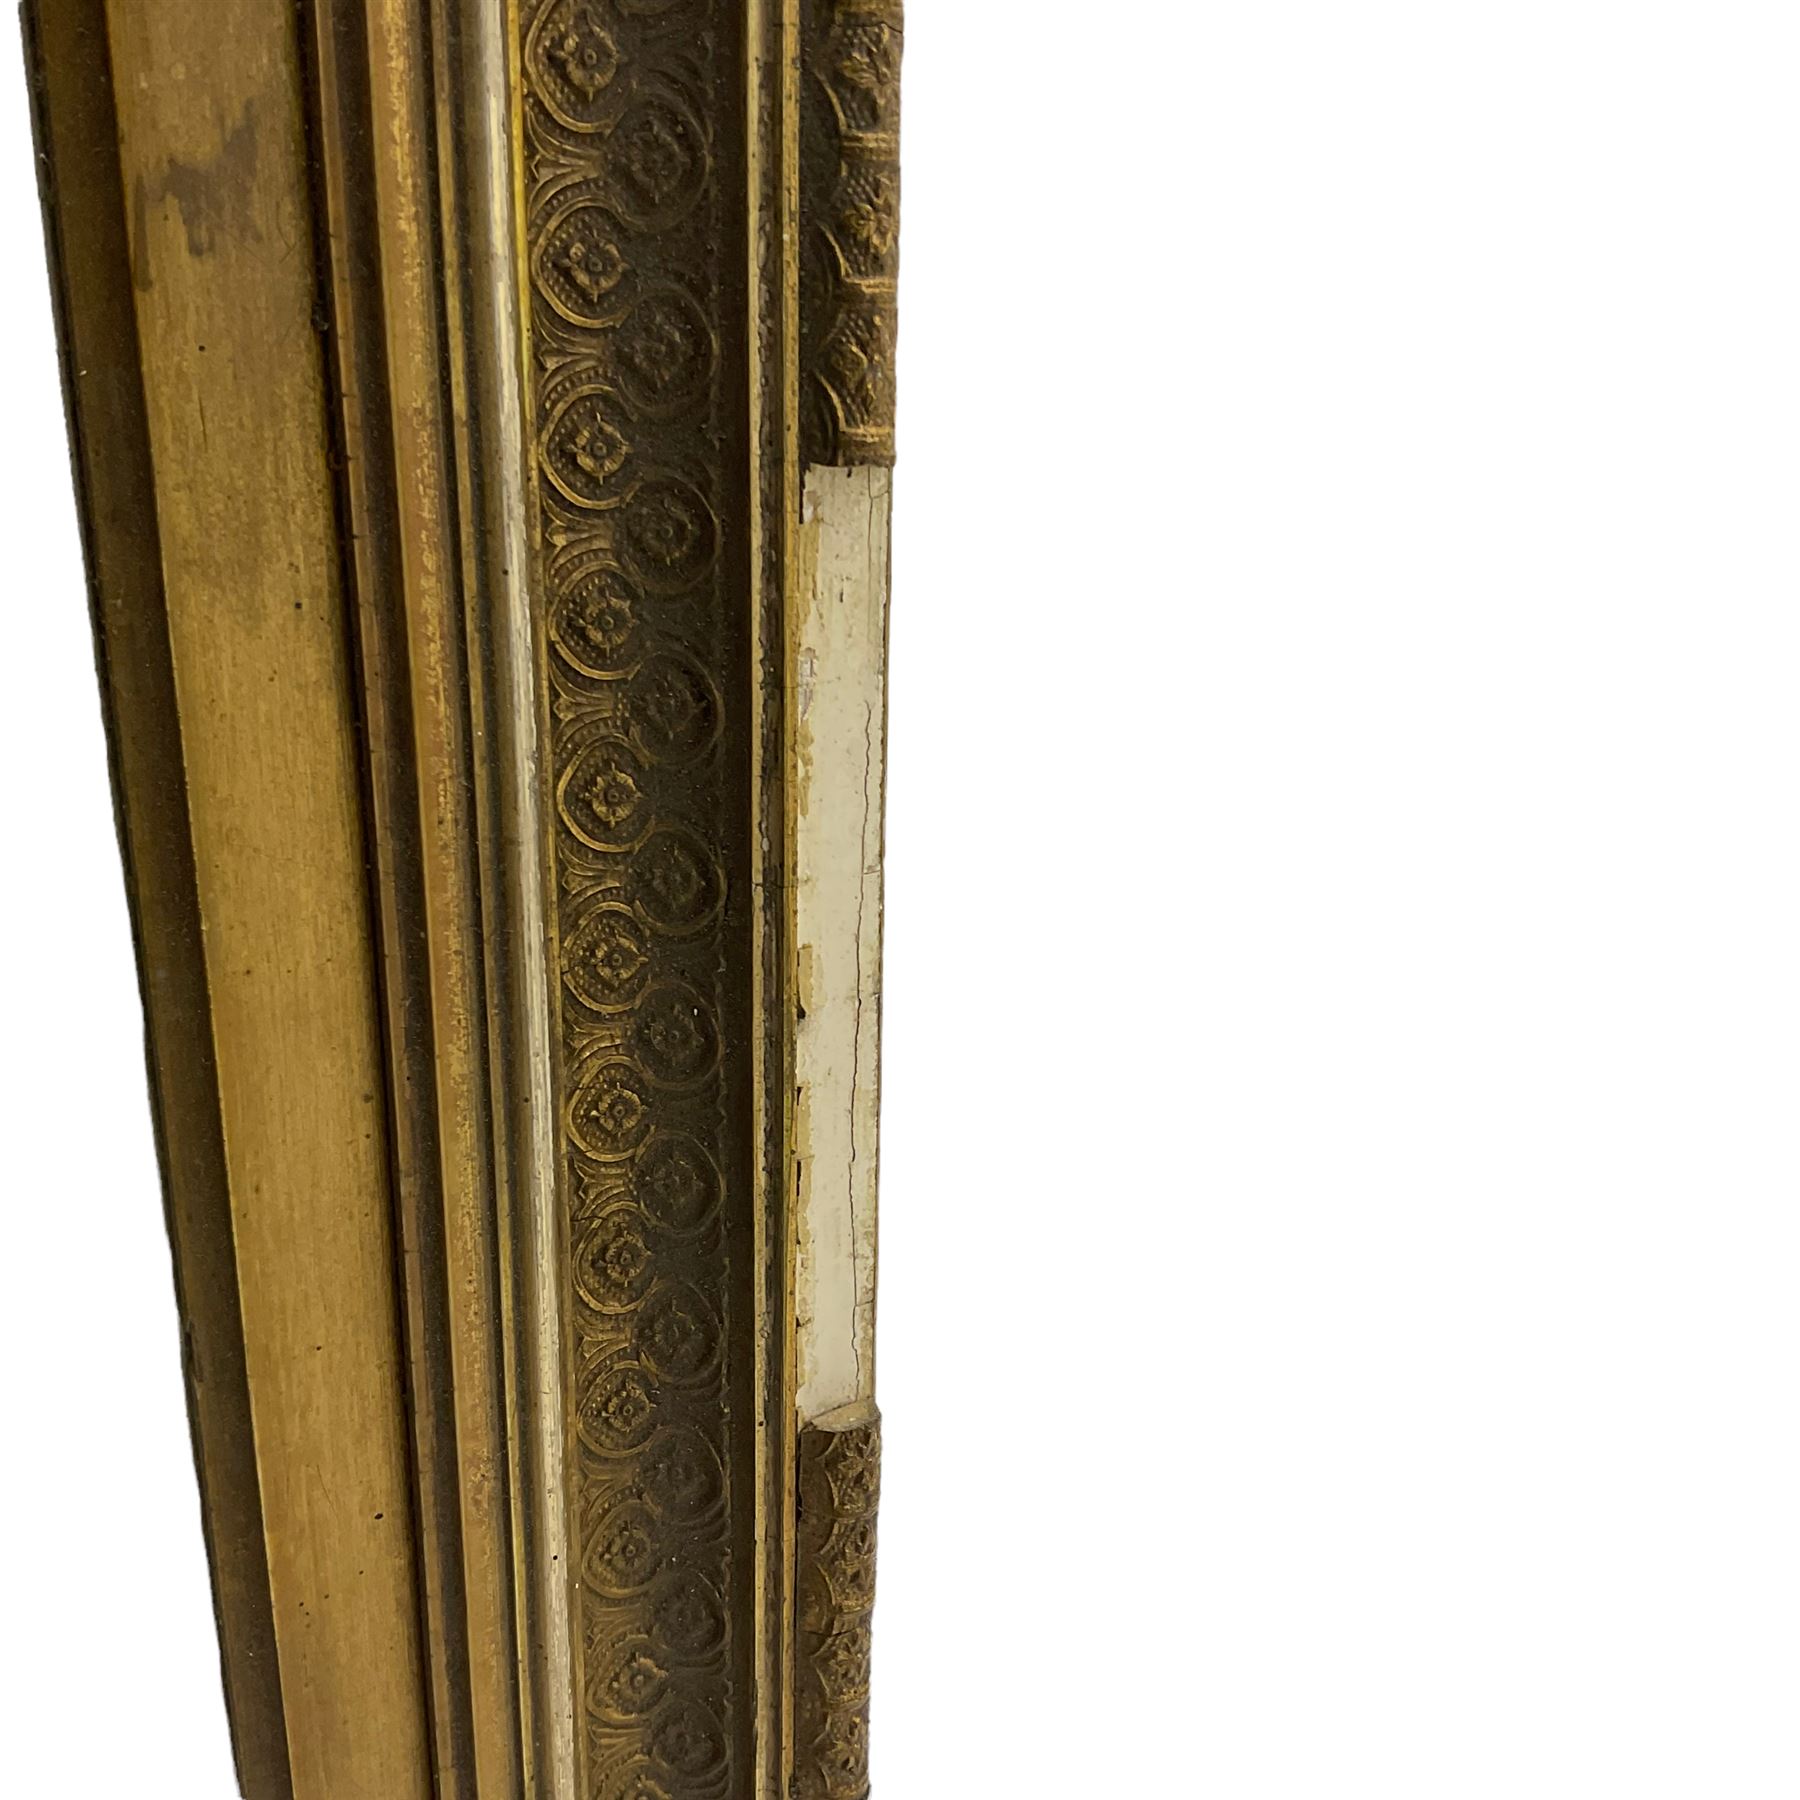 Rectangular mirror in gilt frame (78cm x 104cm) - Image 3 of 3